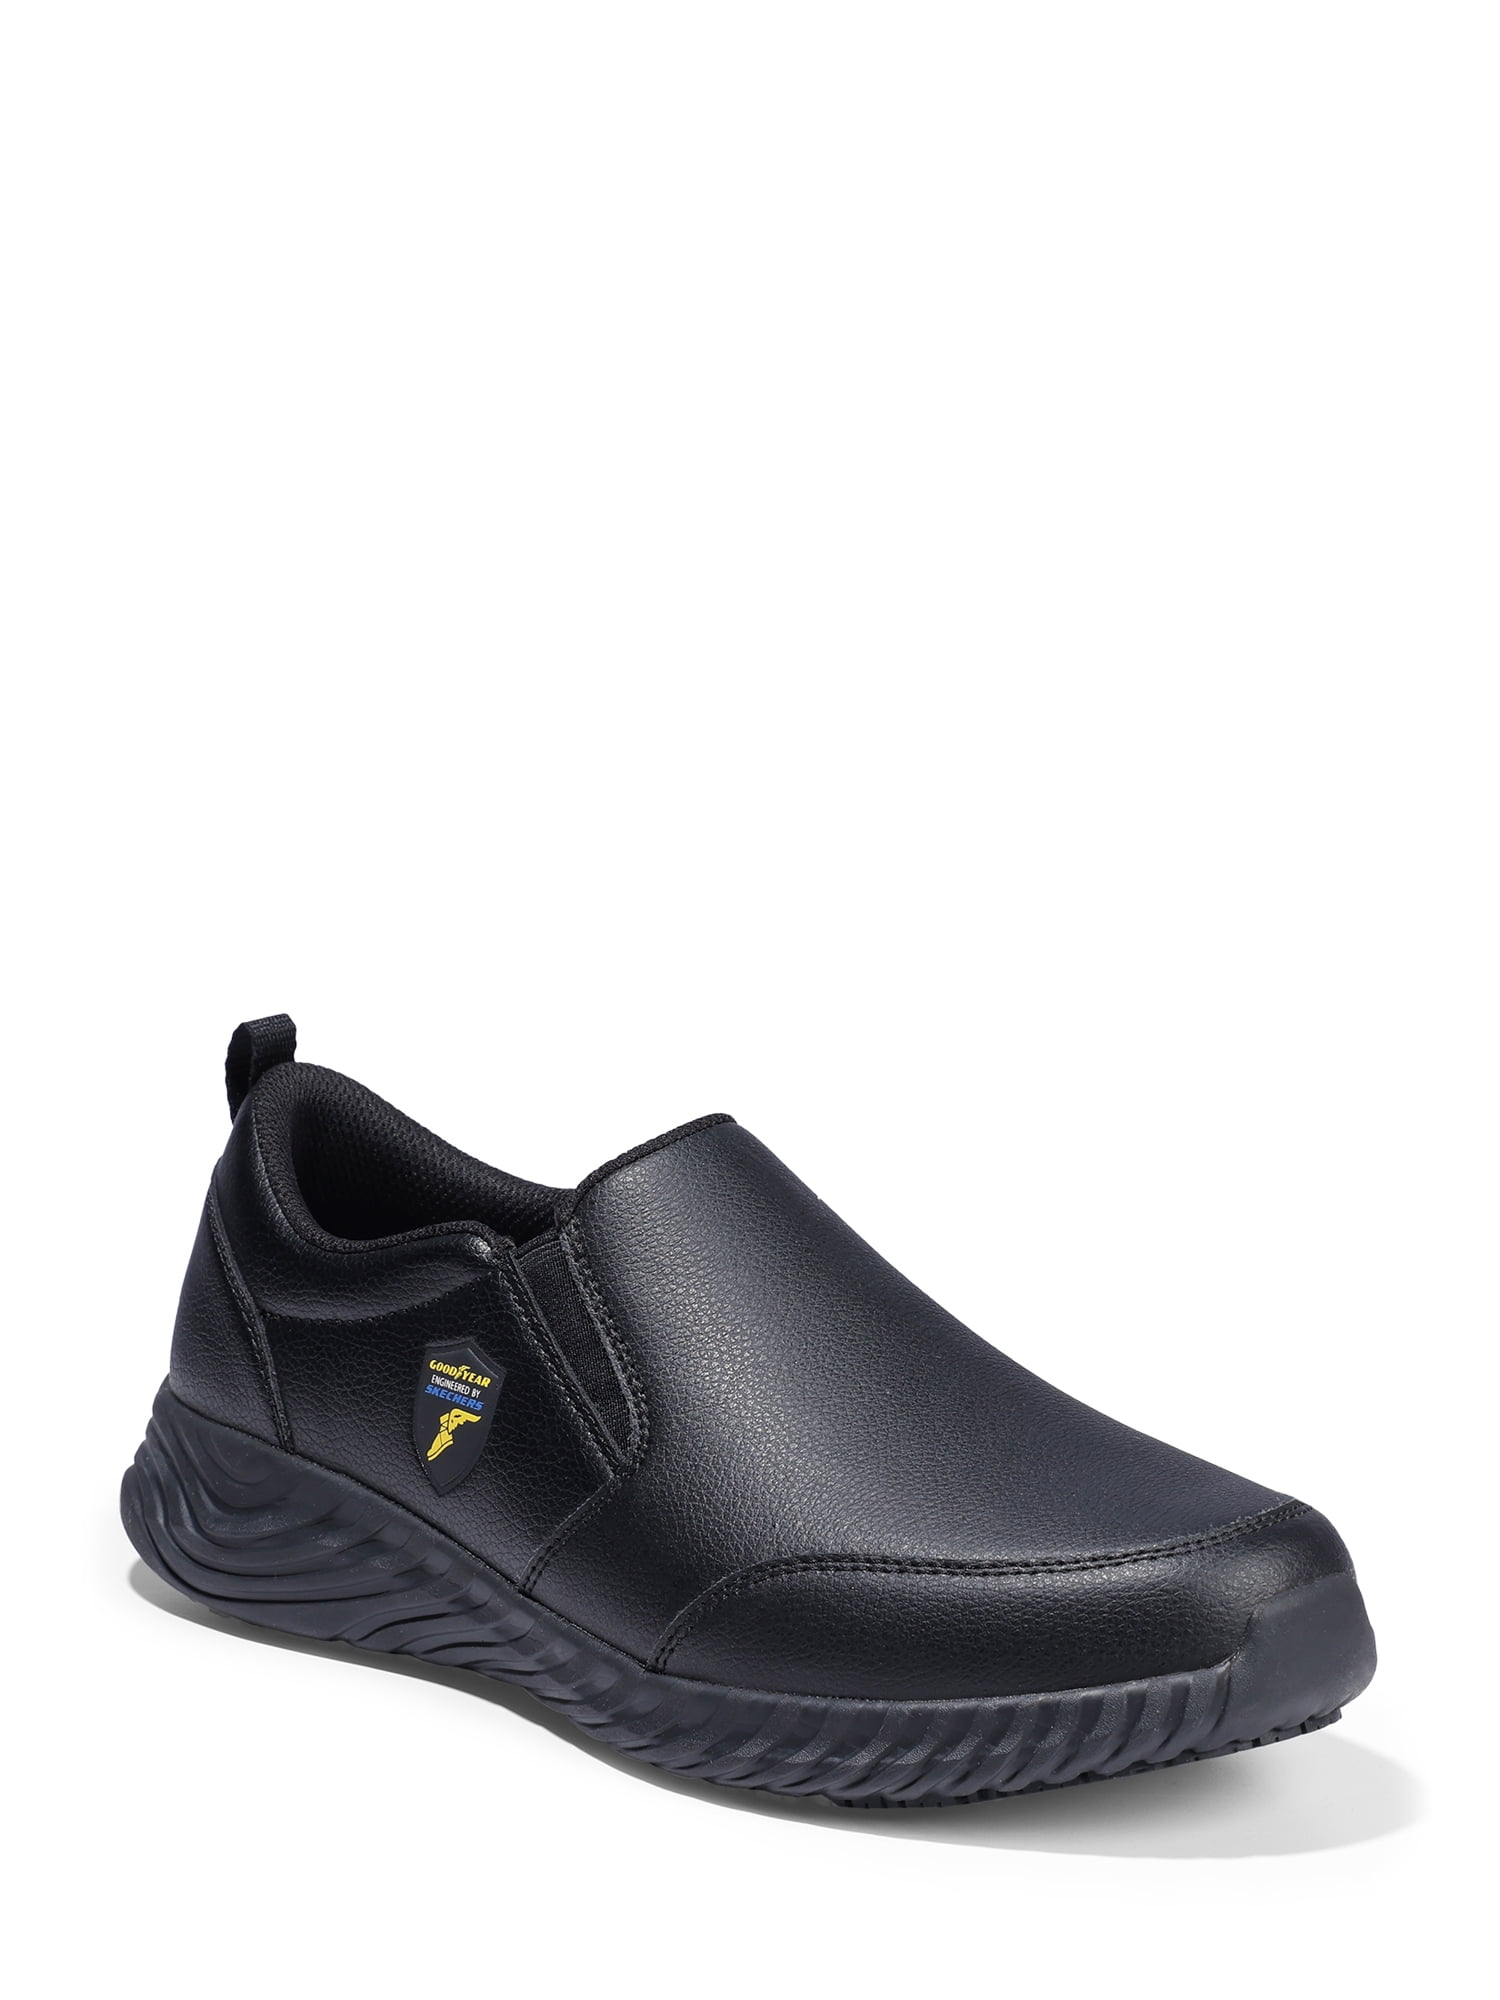 Bewolkt zoet magneet Goodyear Engineered by Skechers Men's Slayter Slip Resistant Shoes -  Walmart.com